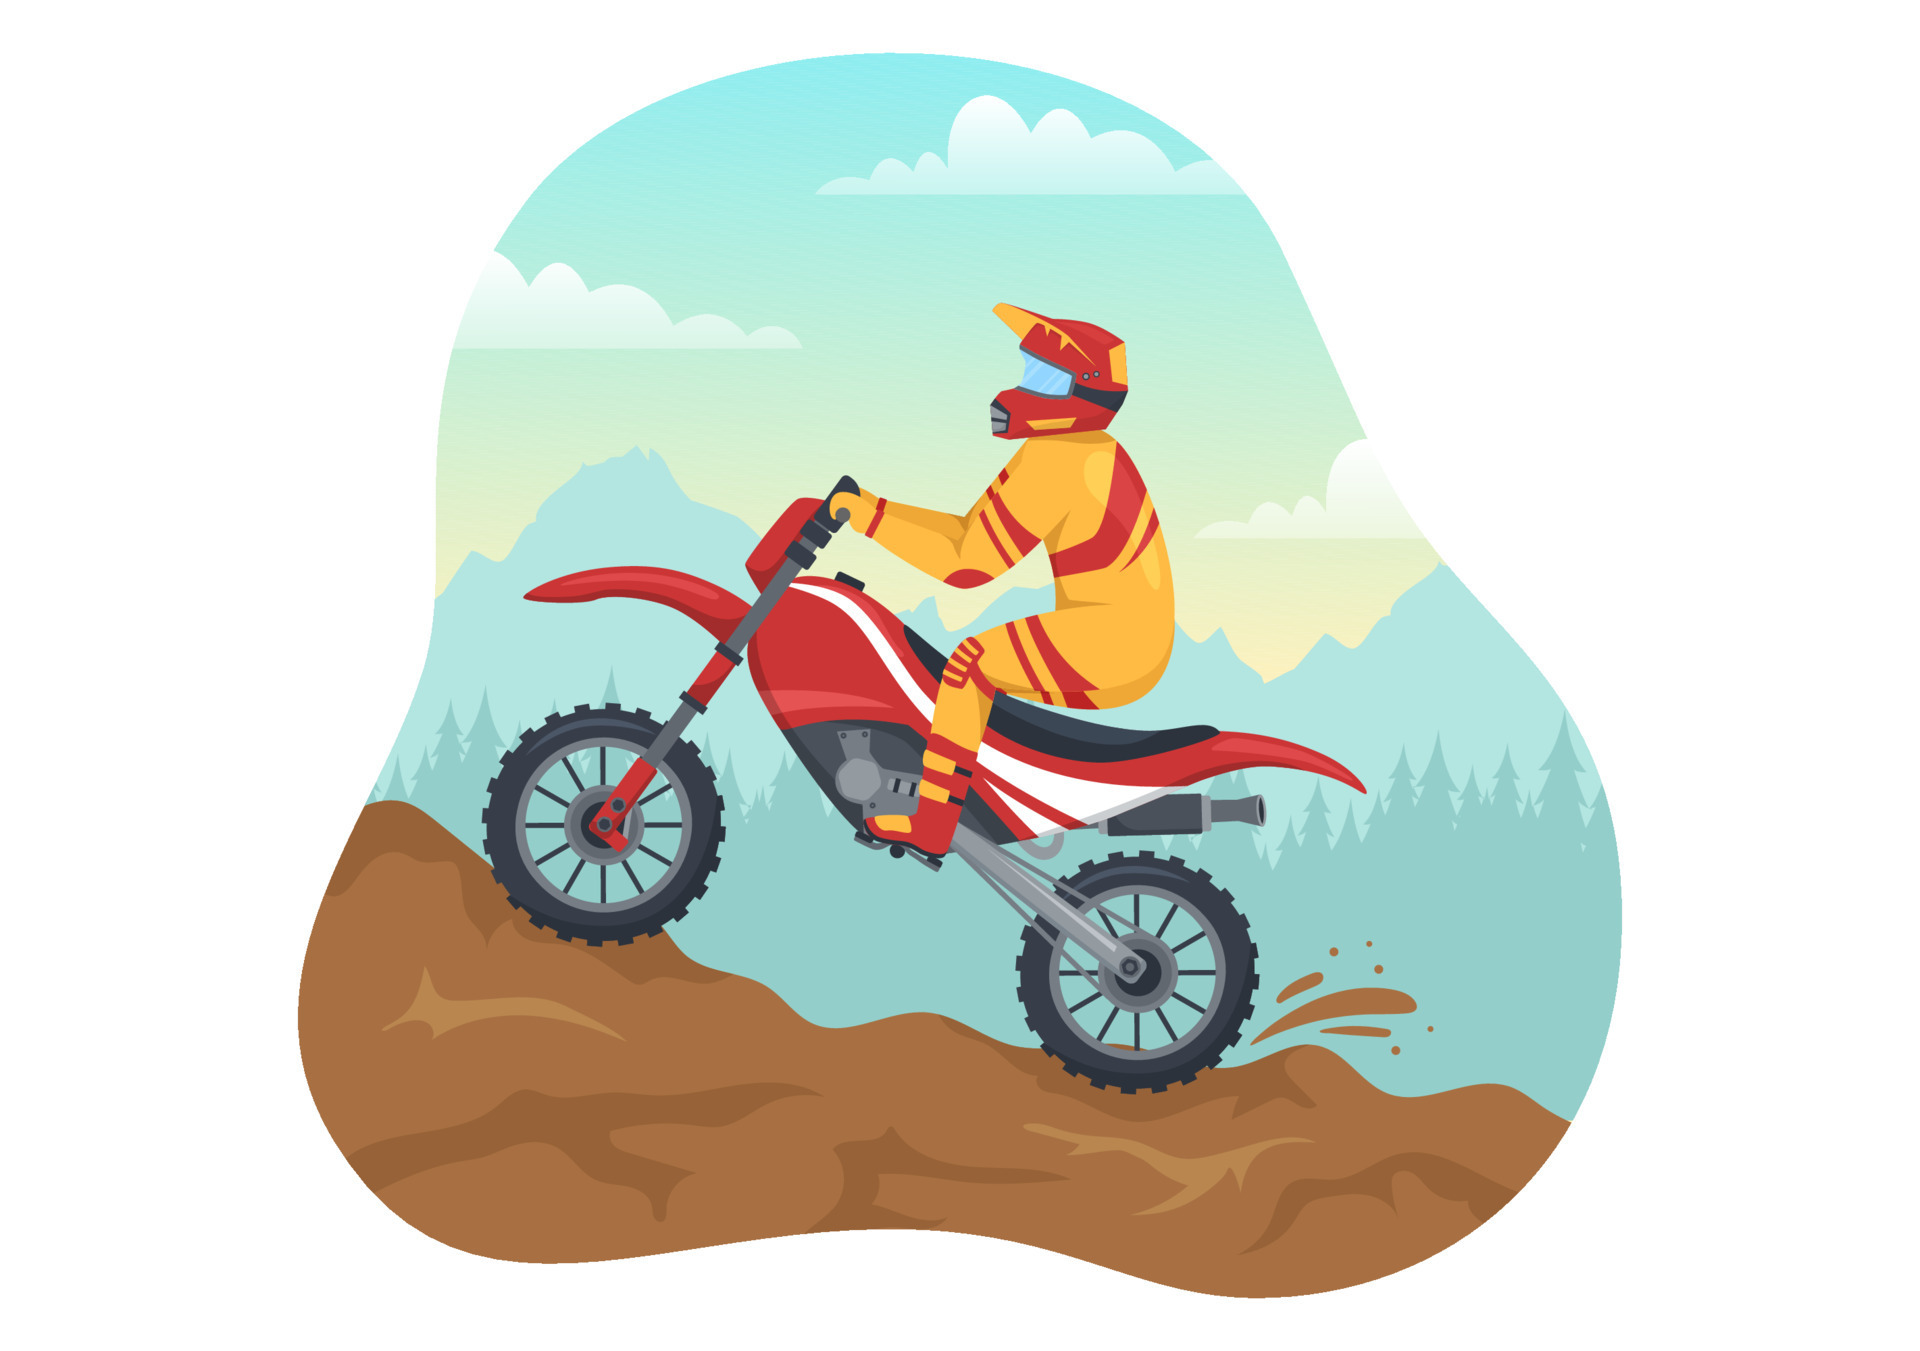 Motocross Motocicleta Desenhado Mão Ilustração Vetorial imagem